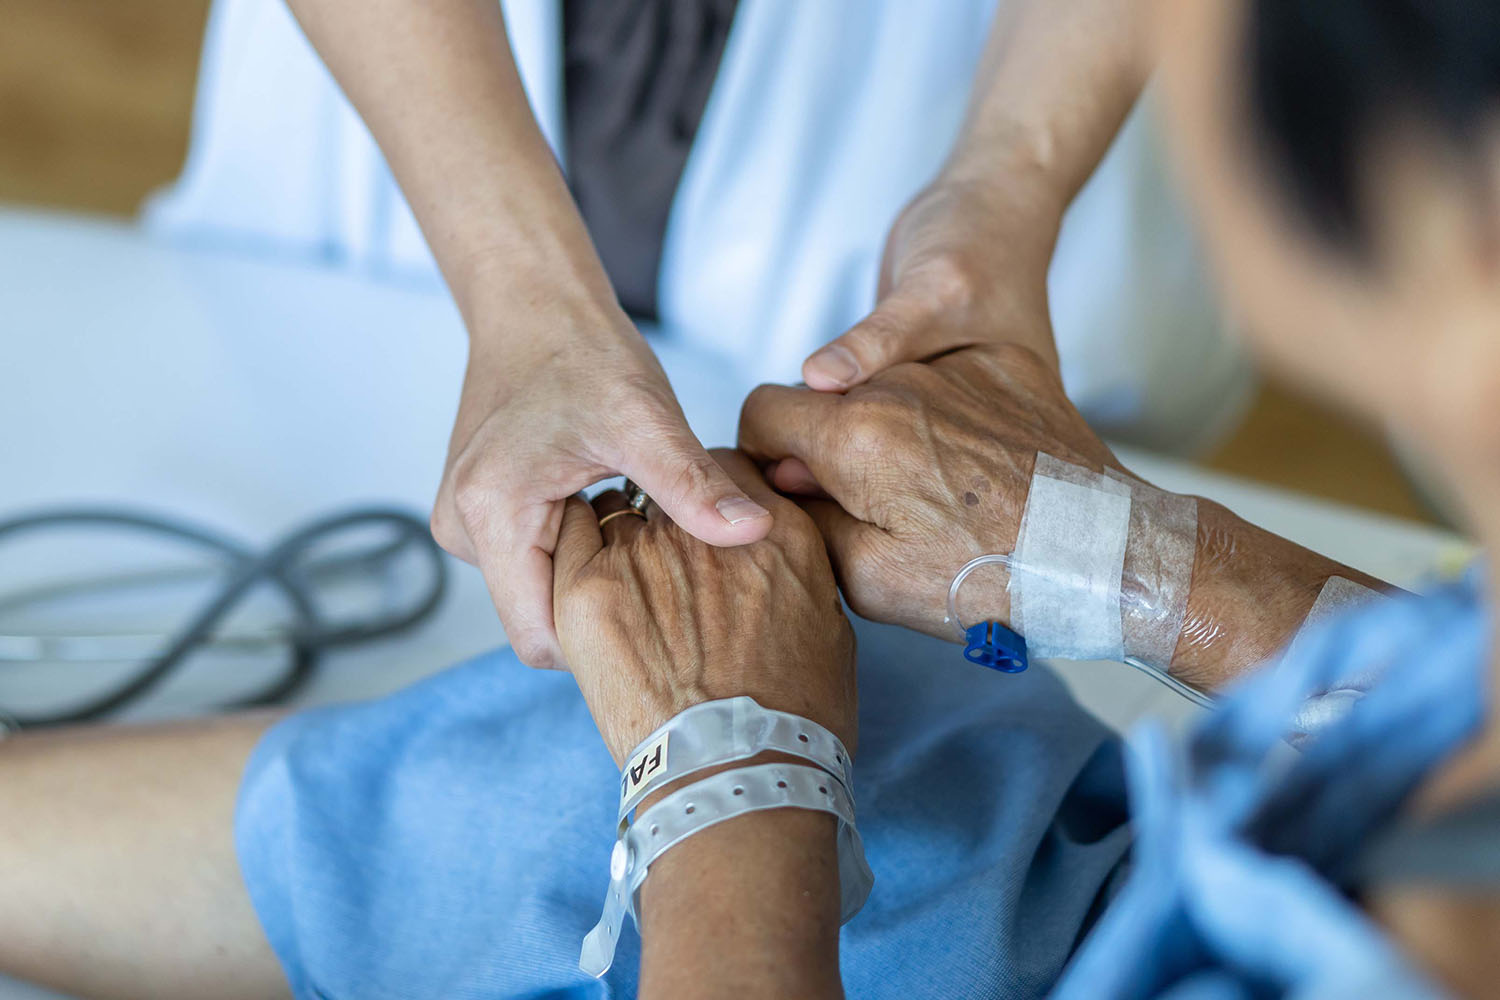 Die Pandemie hat die Situation in der palliativen Versorgung deutlich verschärft: Die Anzahl an Palliativstationen ist bundesweit rückläufig und auch der ambulante Bereich stagniert oder verzeichnet Rückschritte. Was könnte die Lösung für das Problem sein? Das diskutierten Experten beim Kongress der Deutschen Gesellschaft für Palliativmedizin.